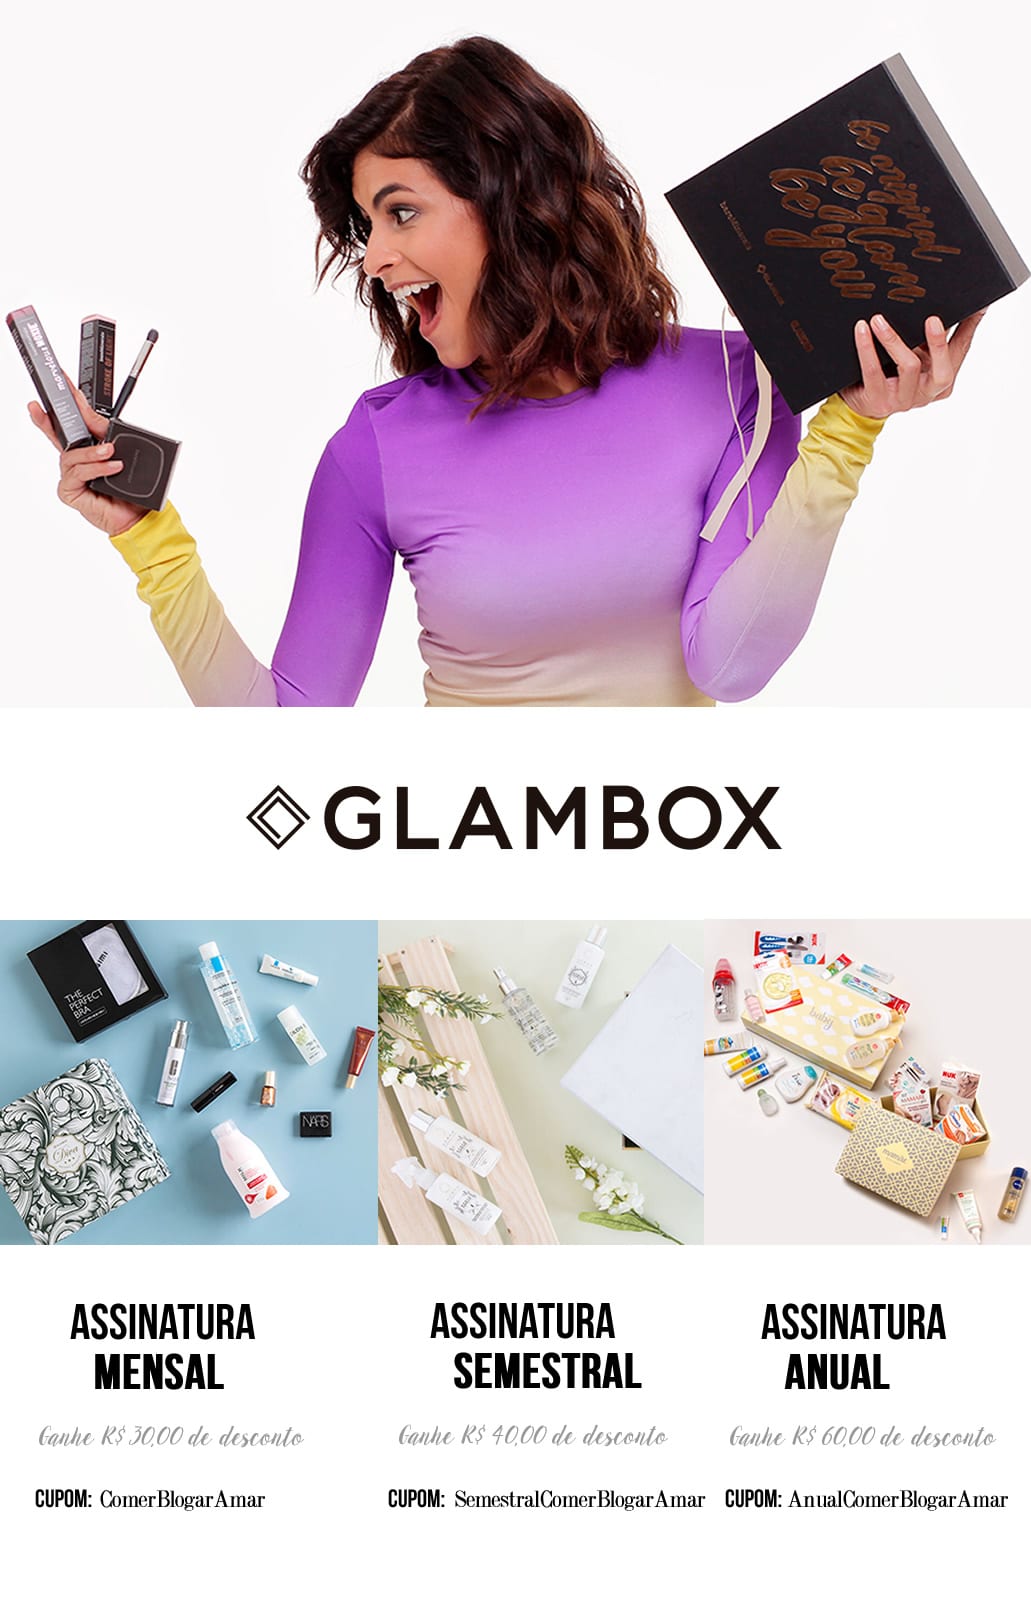 Cupom de Desconto Glambox dezembro 2017, como conseguir cupom de desconto glambox, Cupom de Desconto, Glambox Joy, #GlamboxJoy